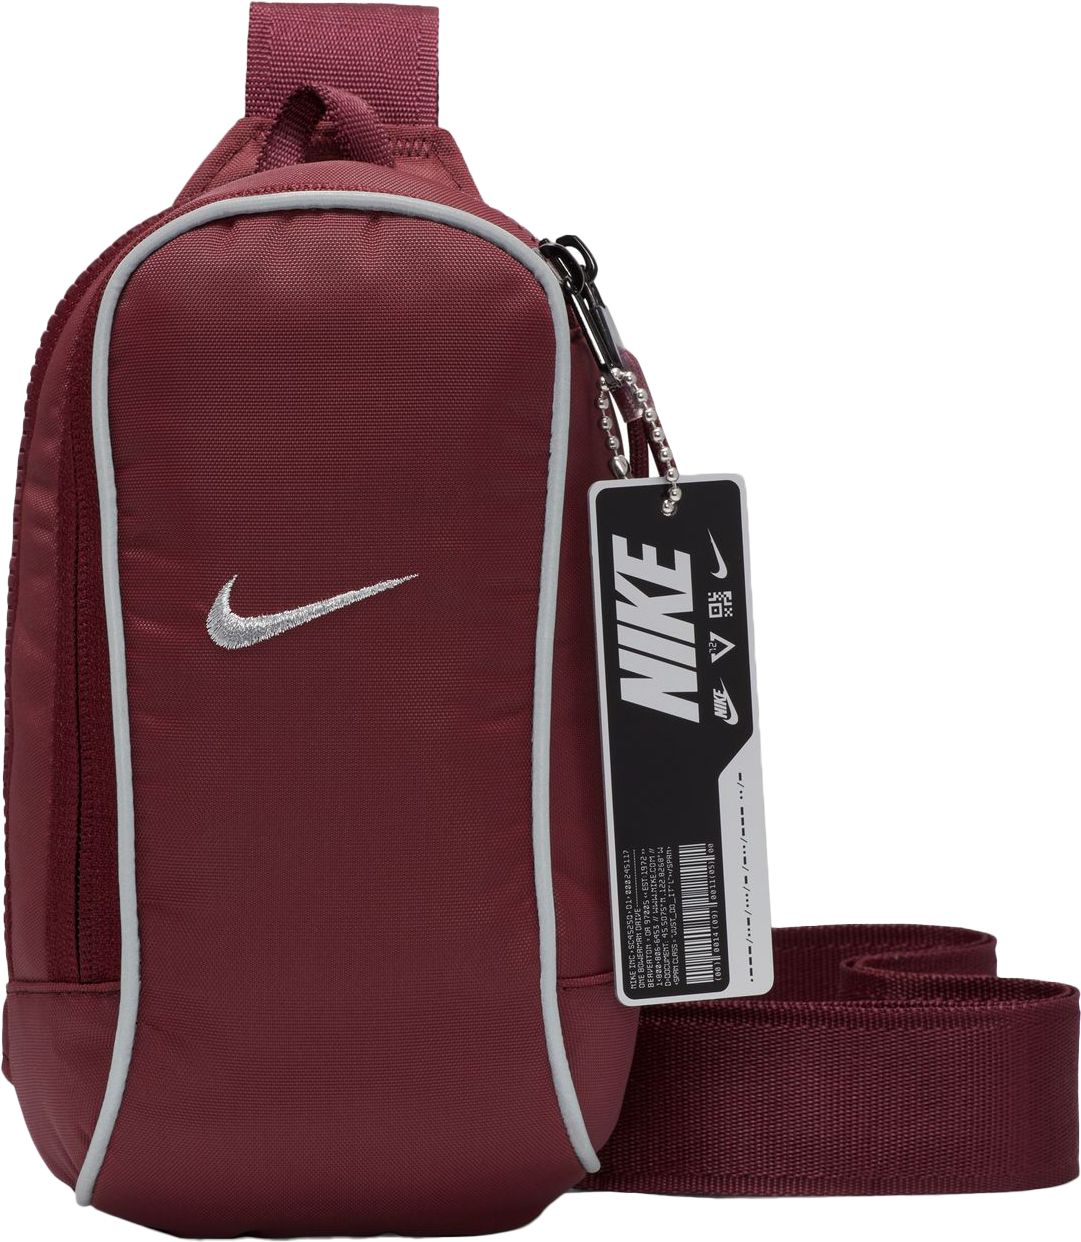 Nike Sportswear Essential Metallic Crossbody Bag